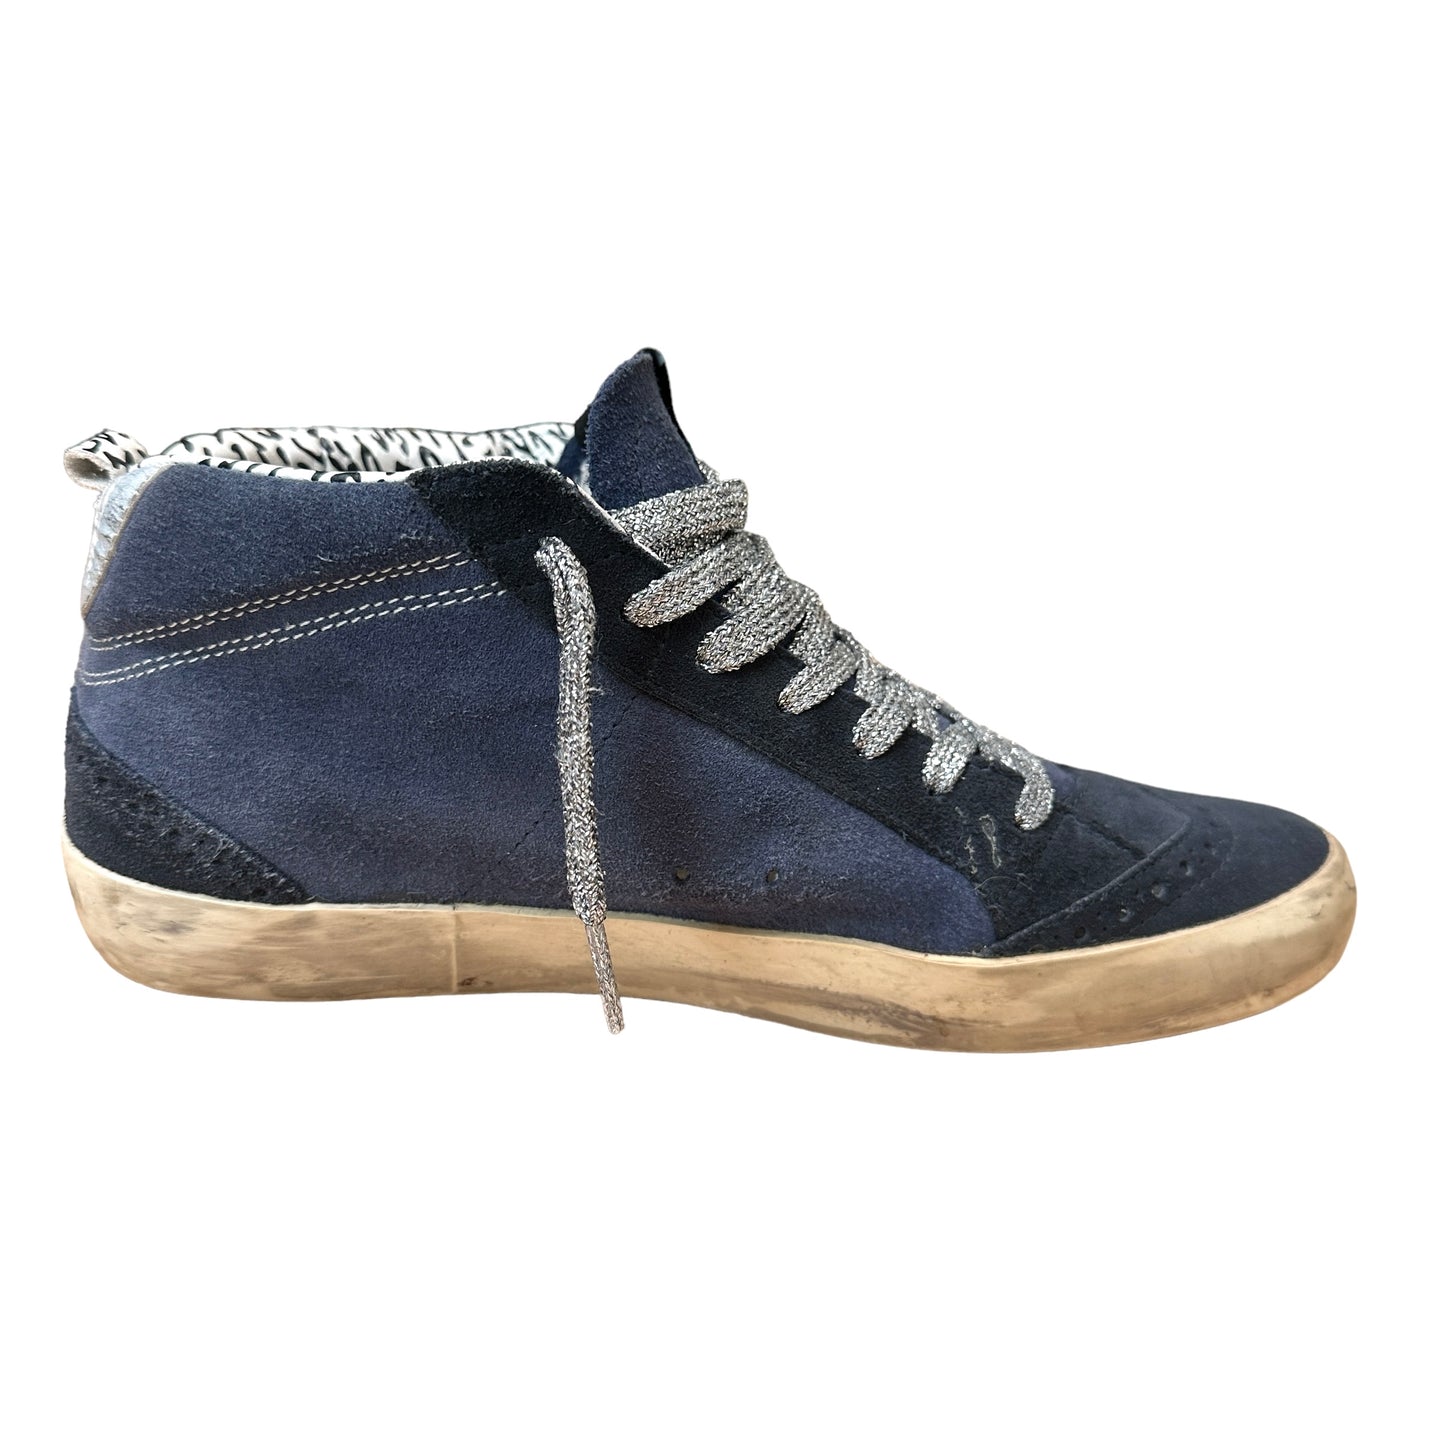 Blue Suede Sneakers - 8